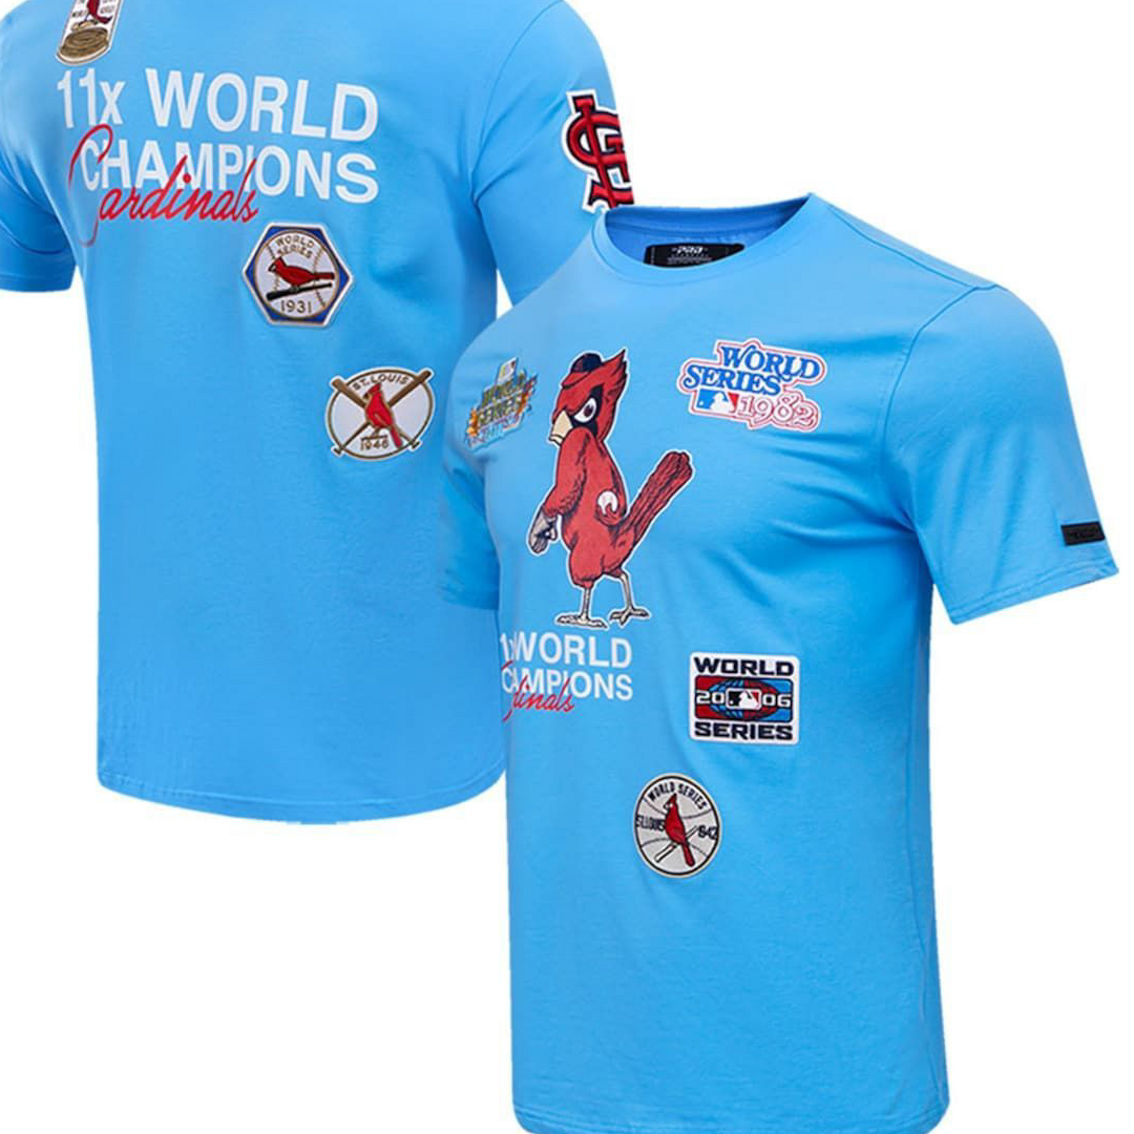 Pro Standard Men's Light Blue St. Louis Cardinals Ship T-shirt